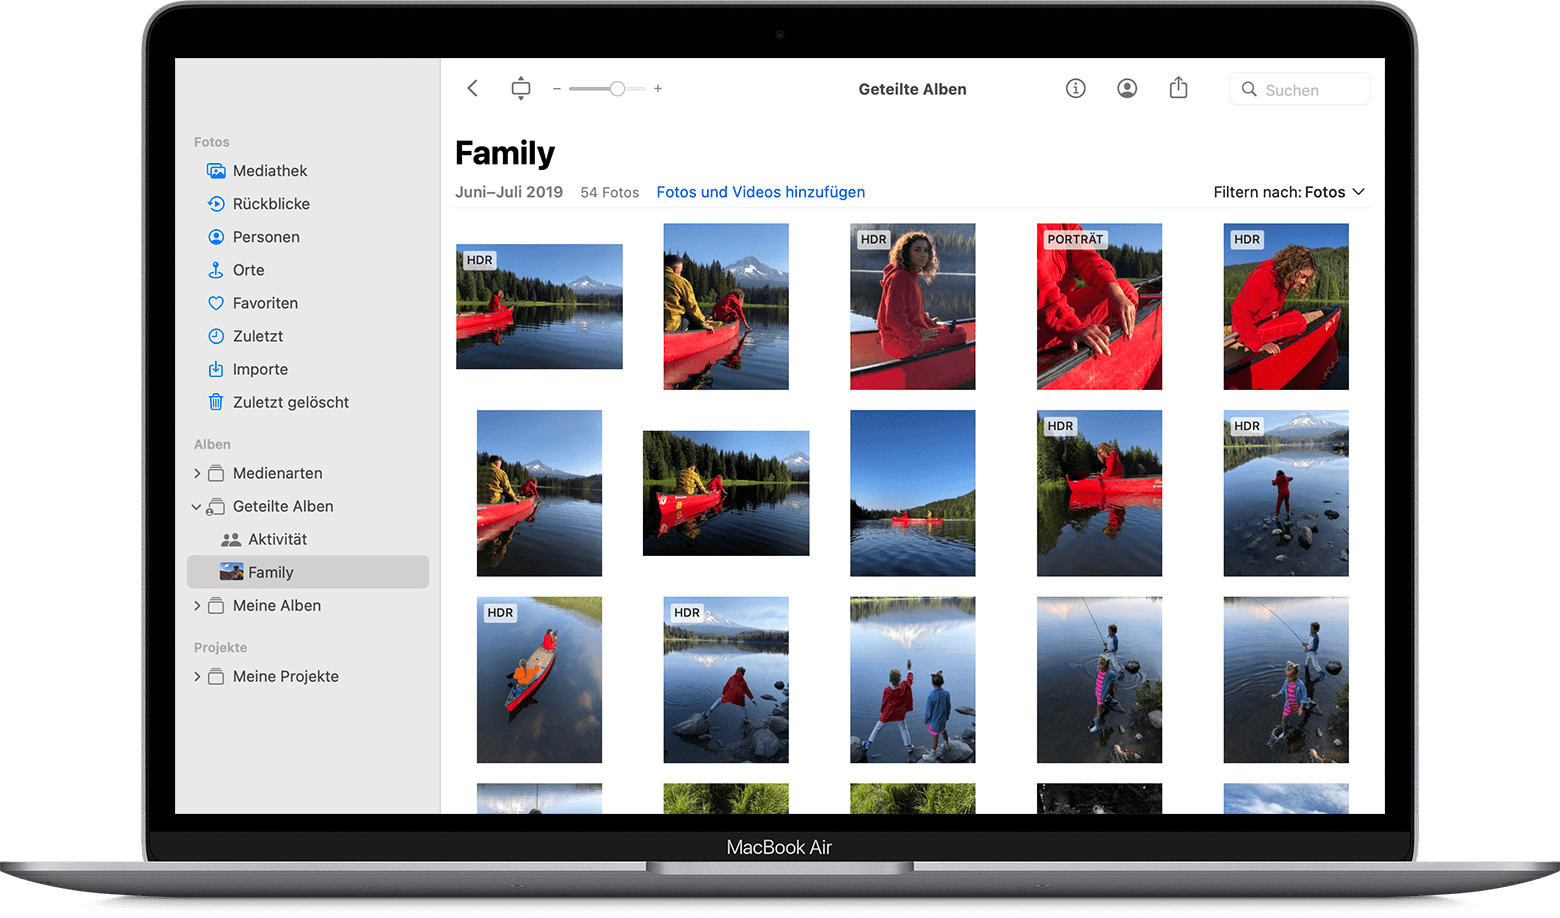 MacBook Air mit Fotos-App, die ein geteiltes Familienalbum anzeigt